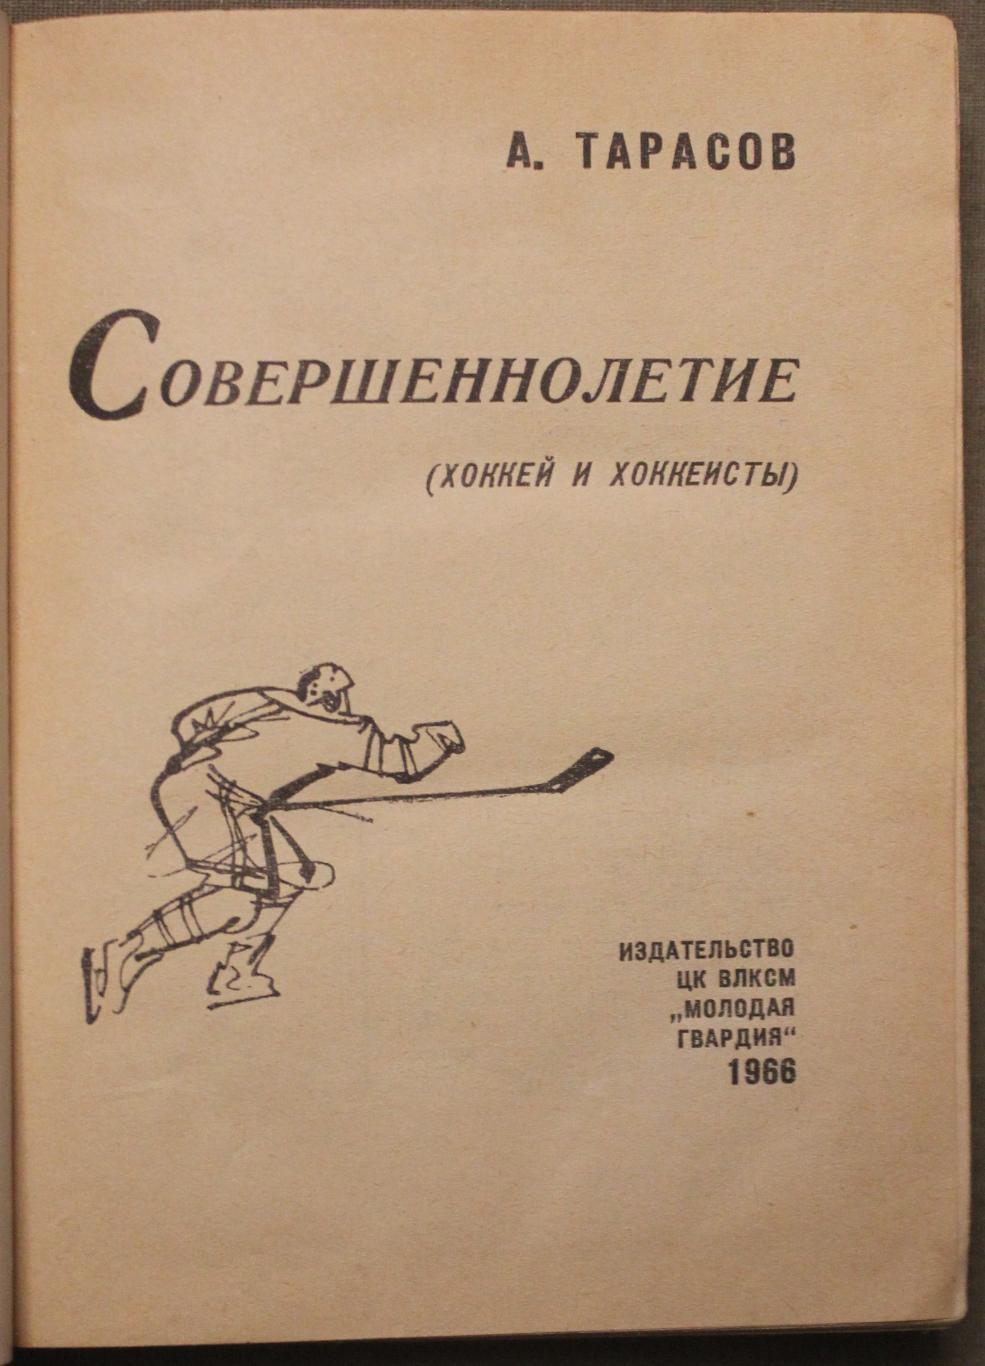 Анатолий Тарасов Совершеннолетие (хоккей и хоккеисты) 1966 2